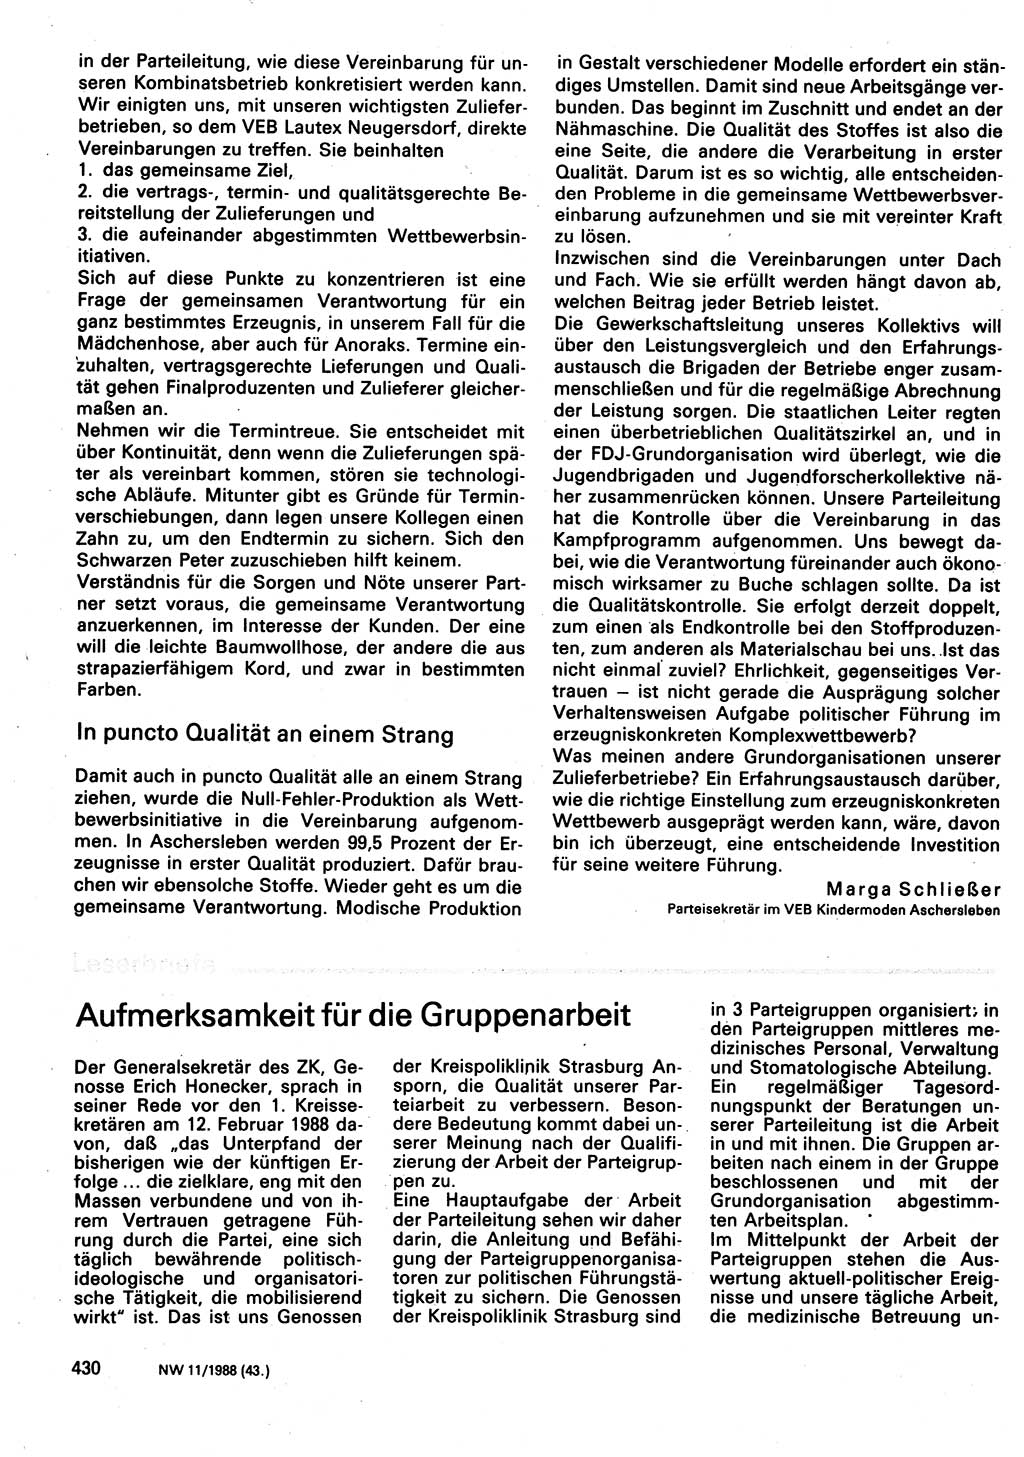 Neuer Weg (NW), Organ des Zentralkomitees (ZK) der SED (Sozialistische Einheitspartei Deutschlands) fÃ¼r Fragen des Parteilebens, 43. Jahrgang [Deutsche Demokratische Republik (DDR)] 1988, Seite 430 (NW ZK SED DDR 1988, S. 430)